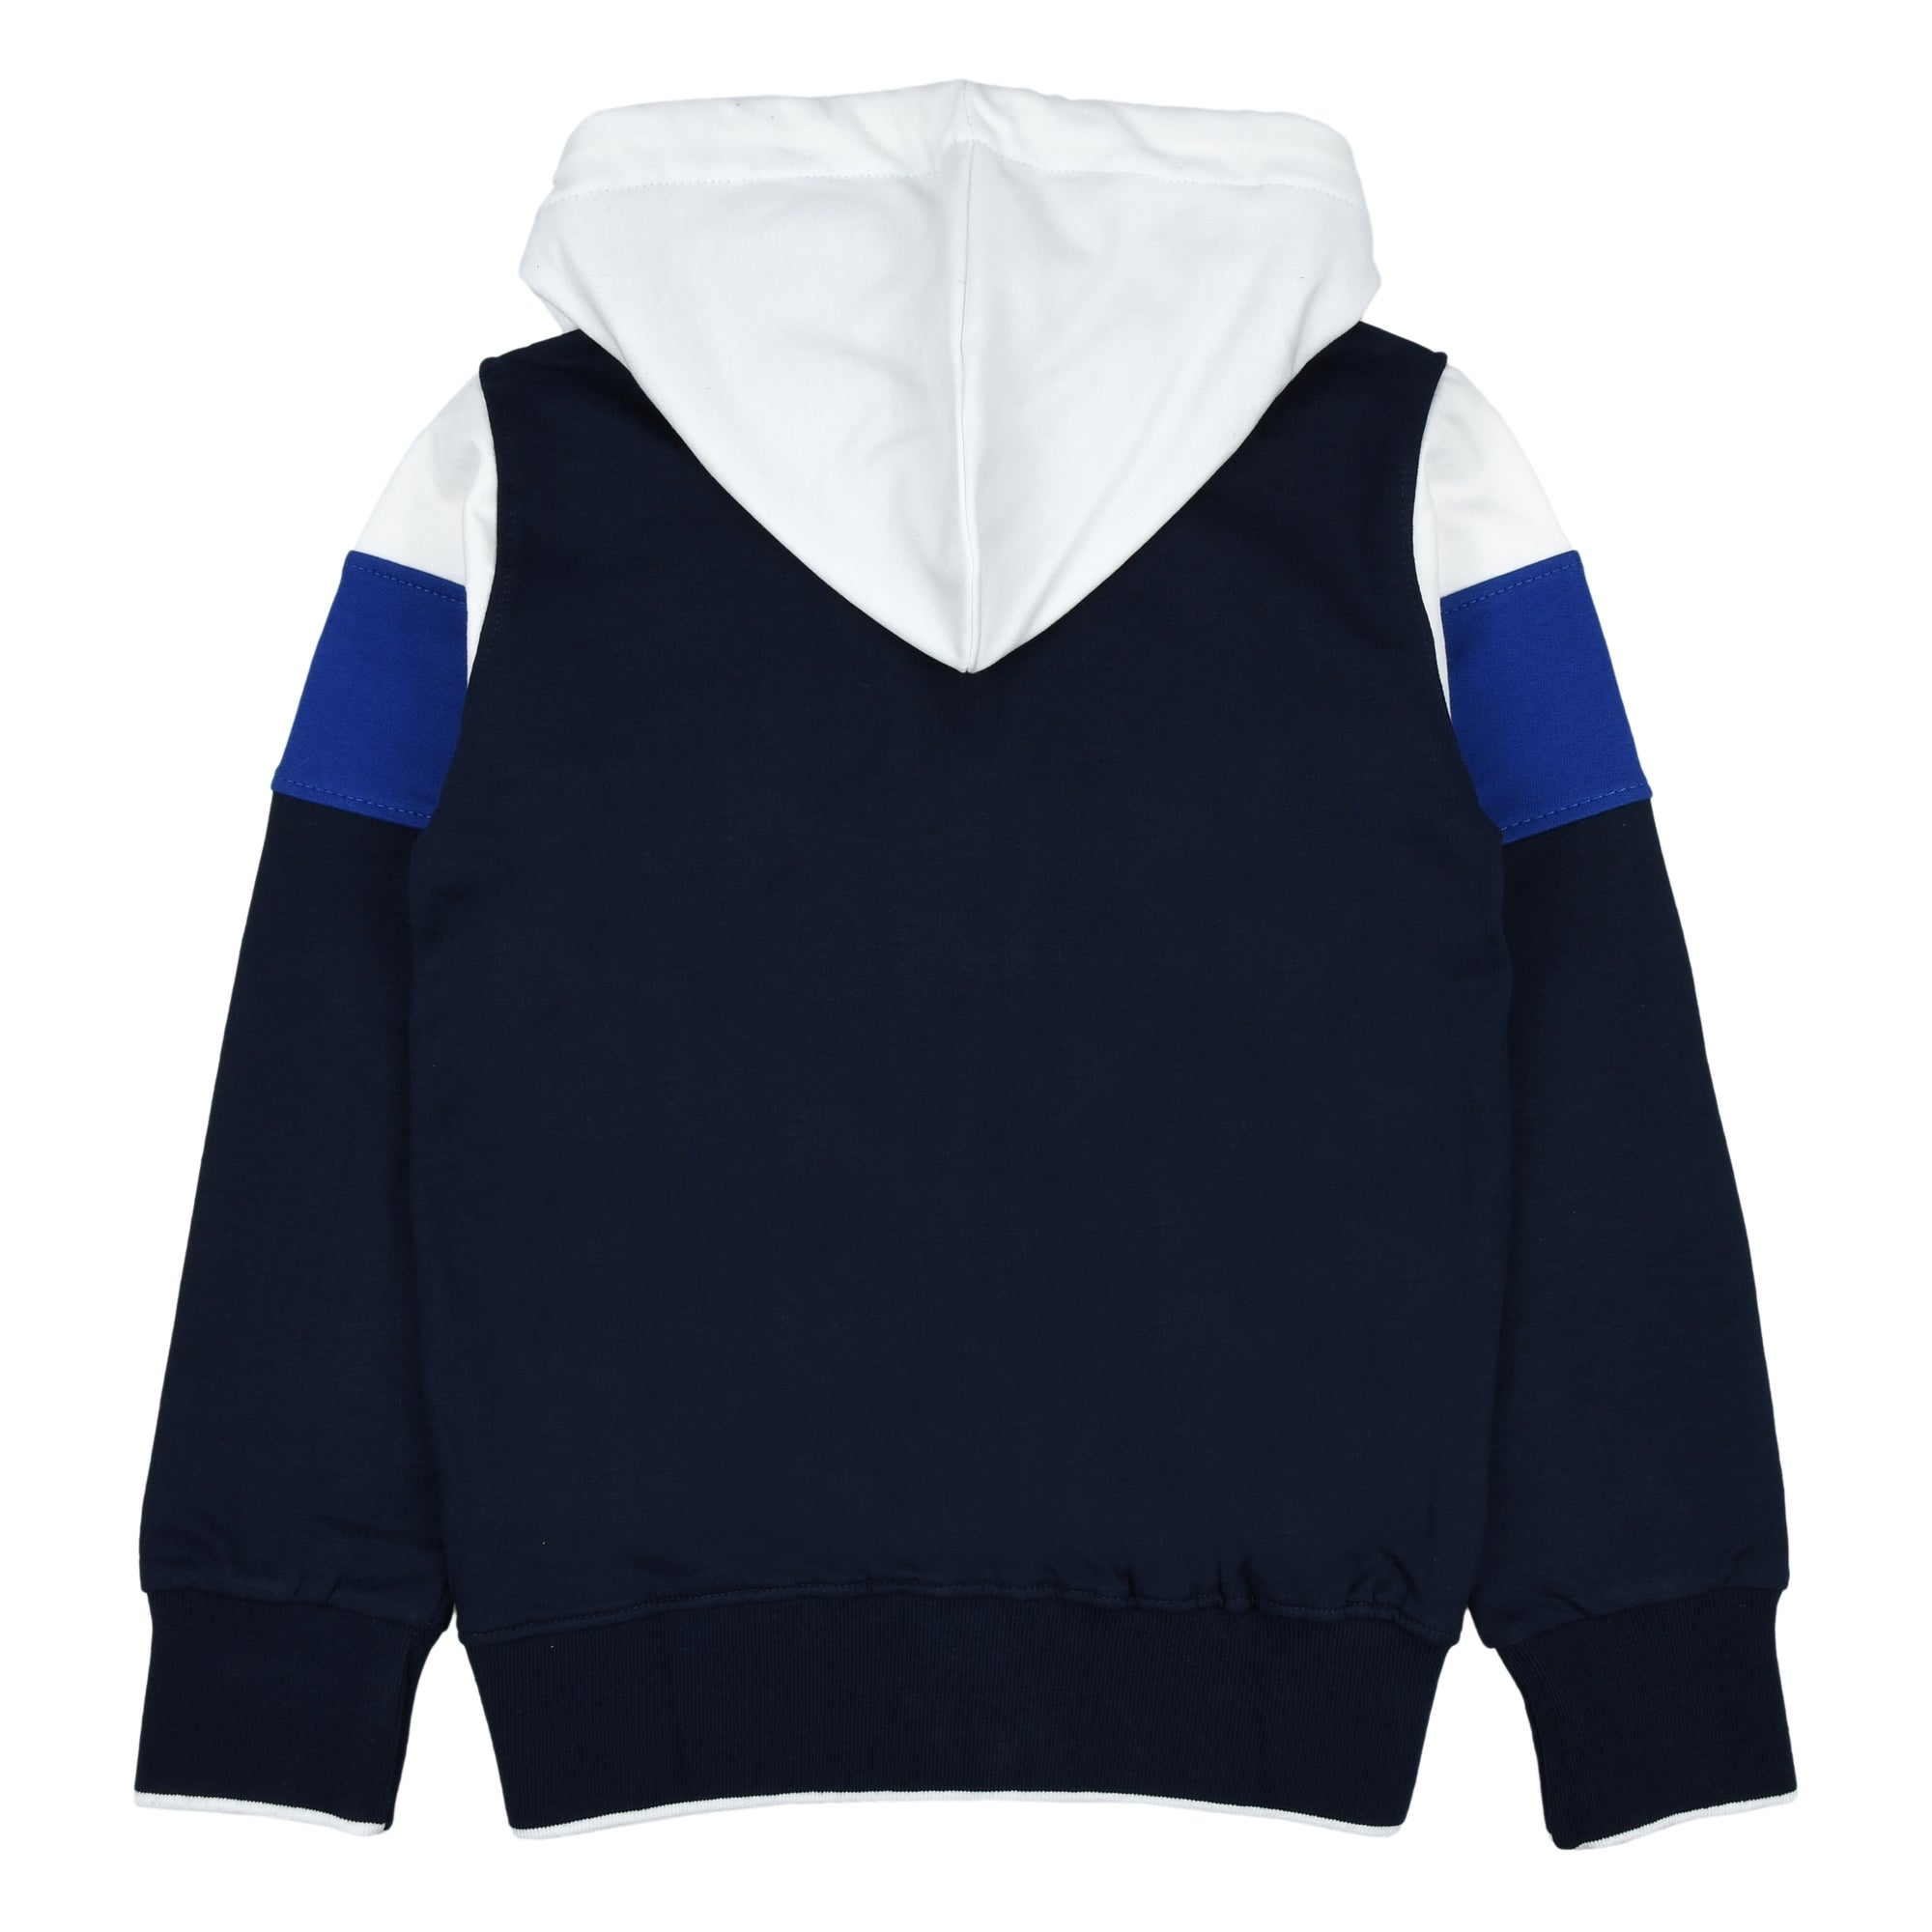 Full zip sweatshirt with hood and logo embroidery